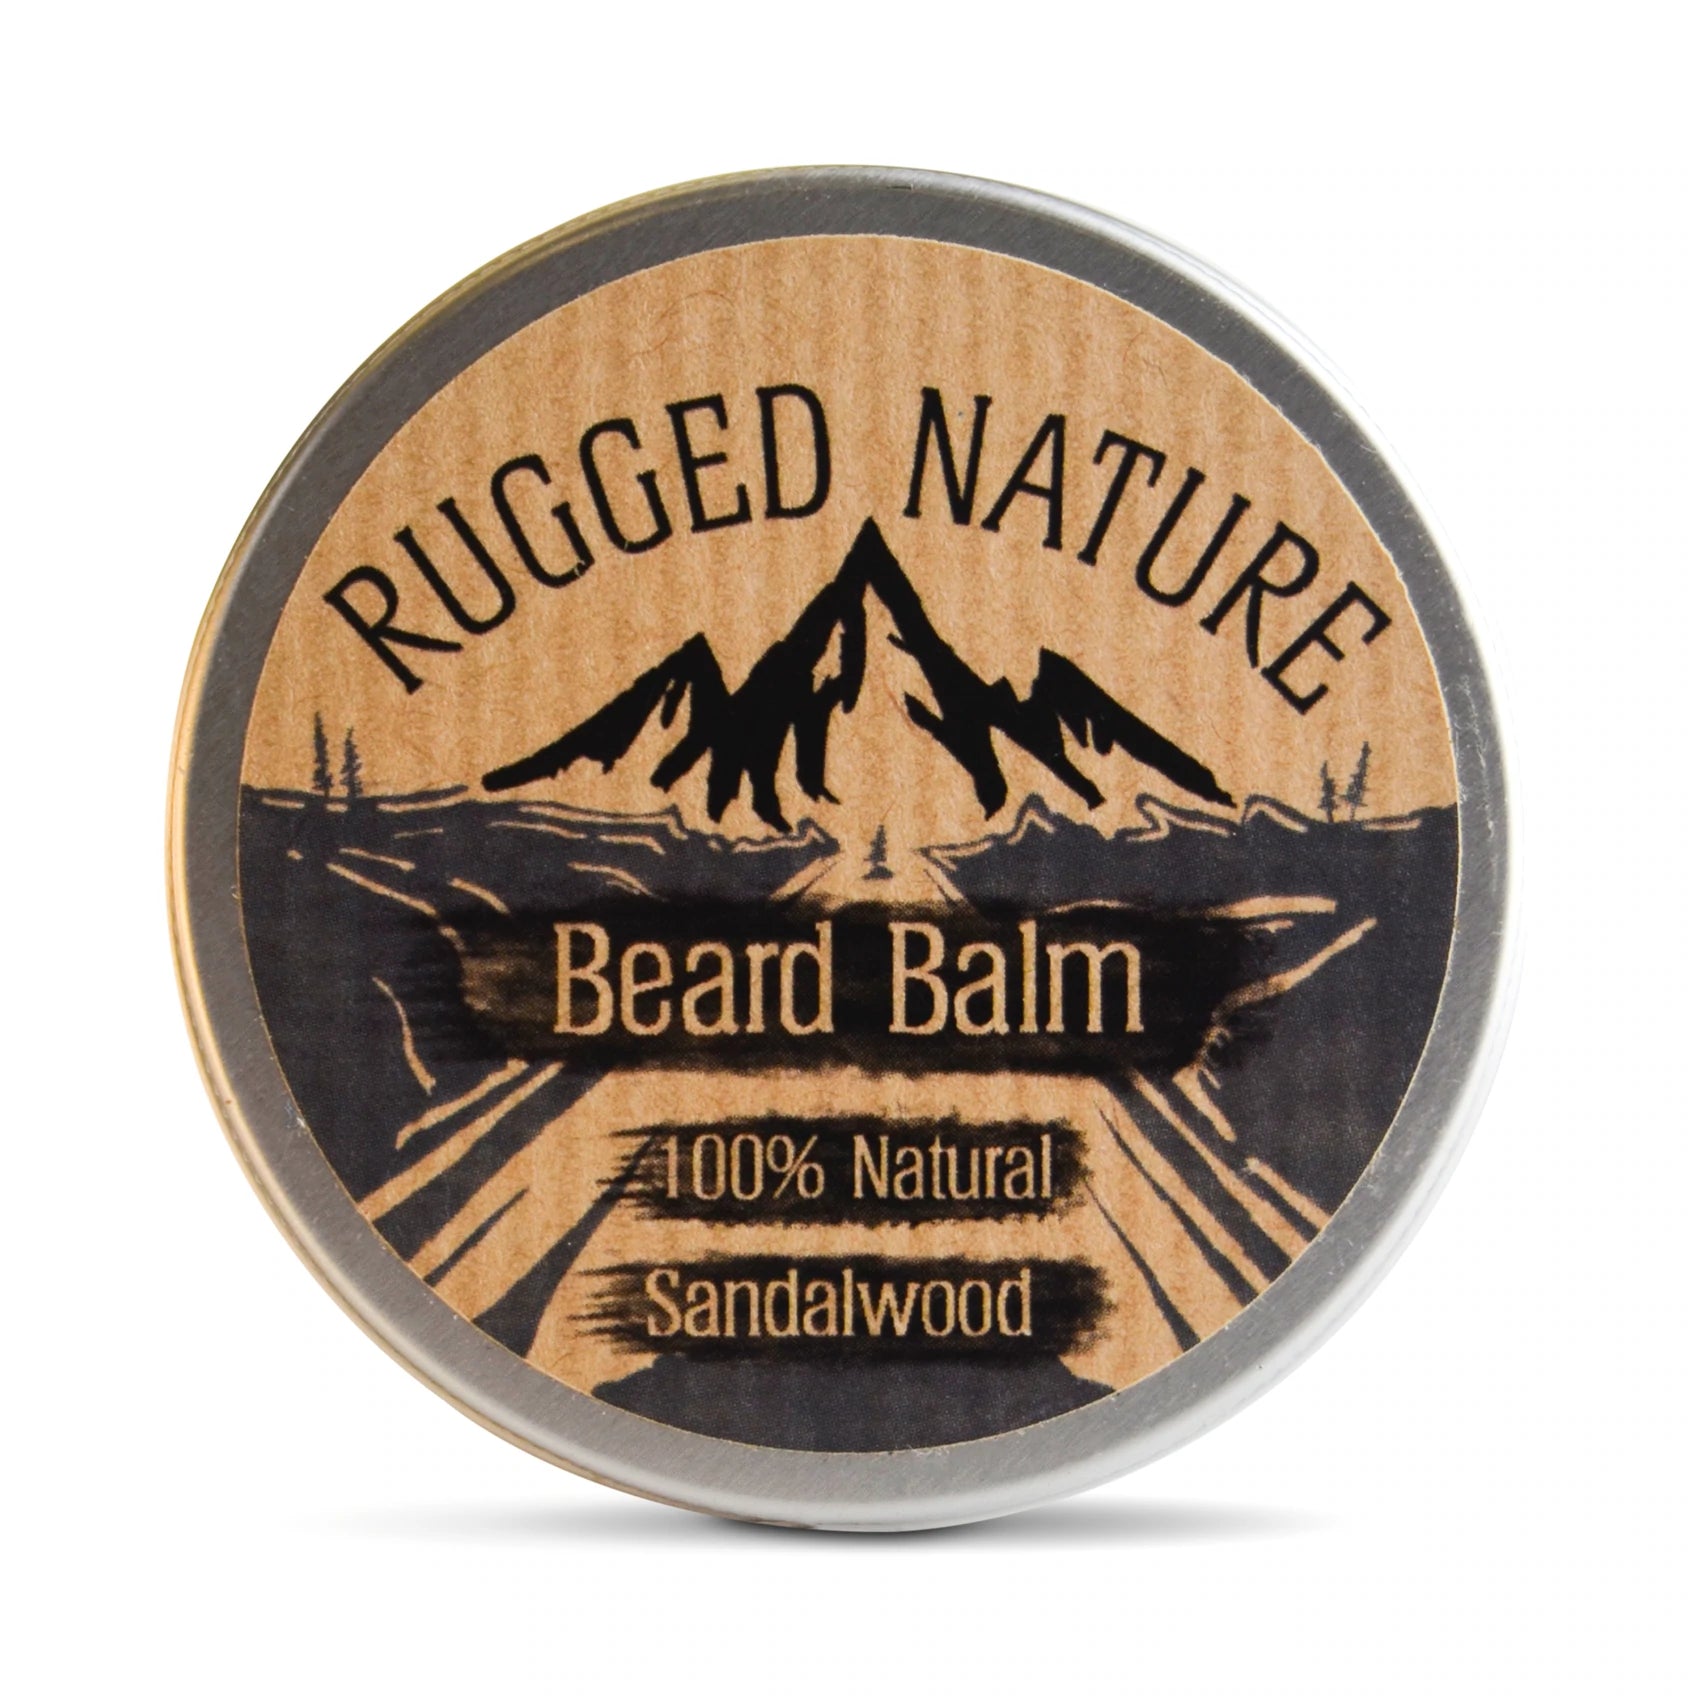 Beard balm - Sandalwood